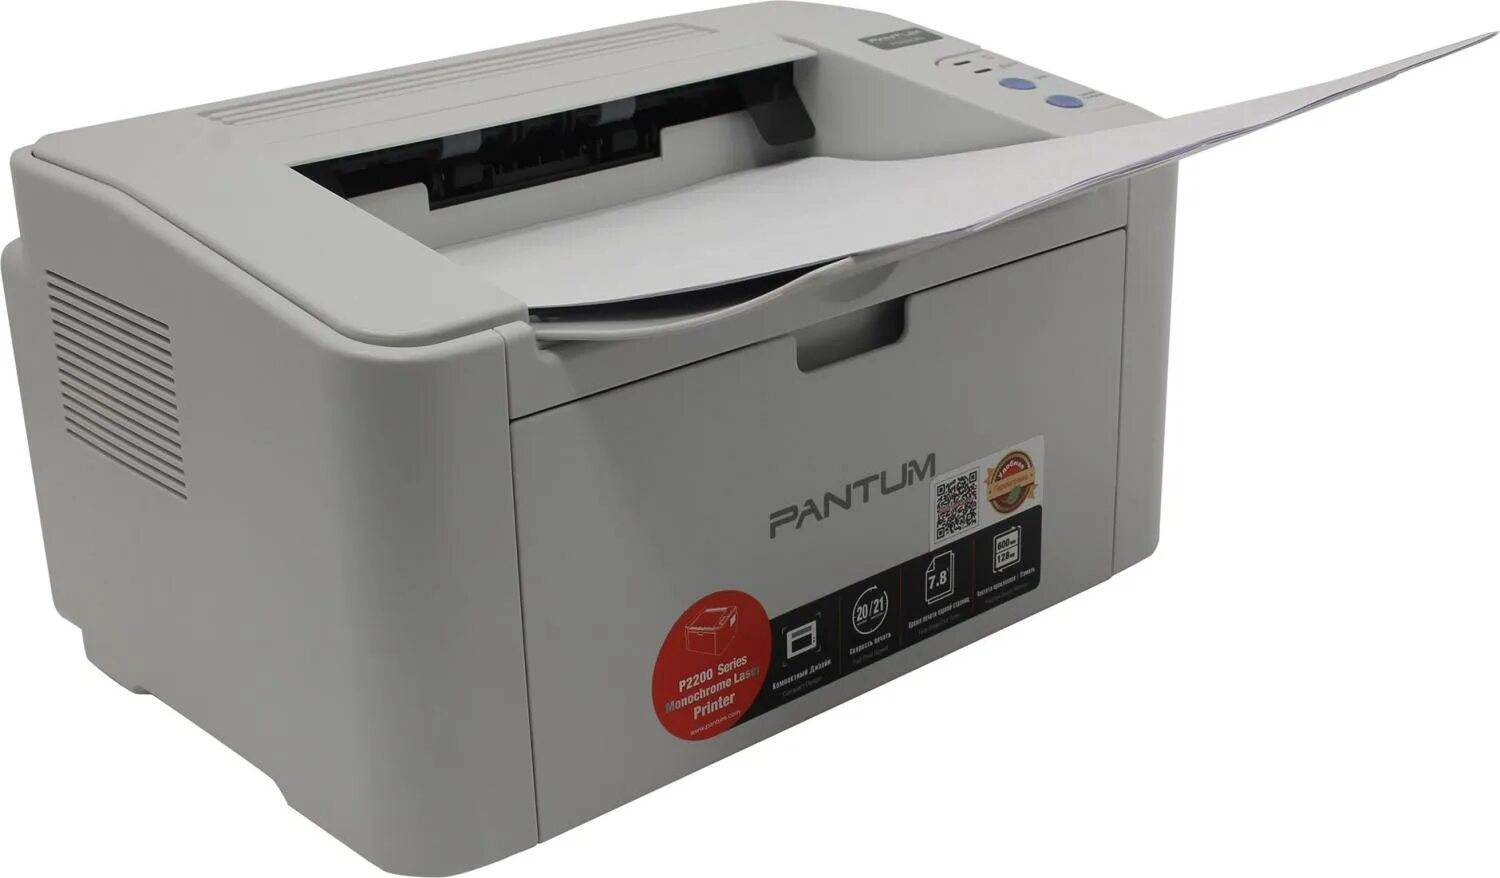 Принтер p2200 series. Принтер лазерный Pantum p2200. Принтер лазерный Pantum p2518. Принтер лазерный Pantum p2516. Пантум 2200.